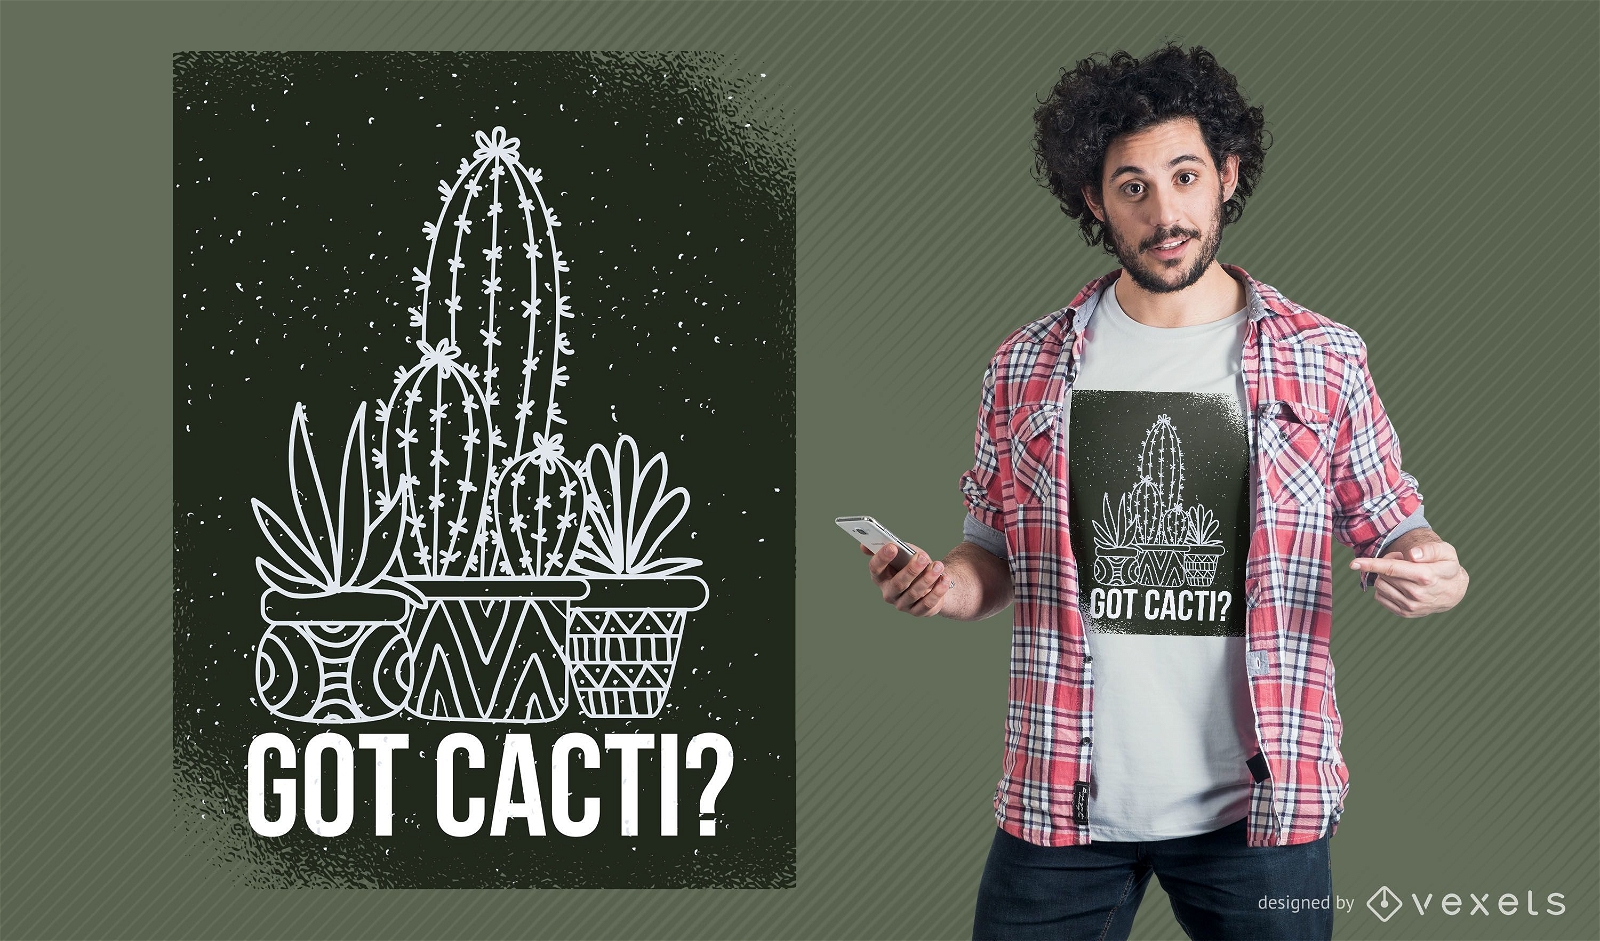 Got cactos t-shirt design